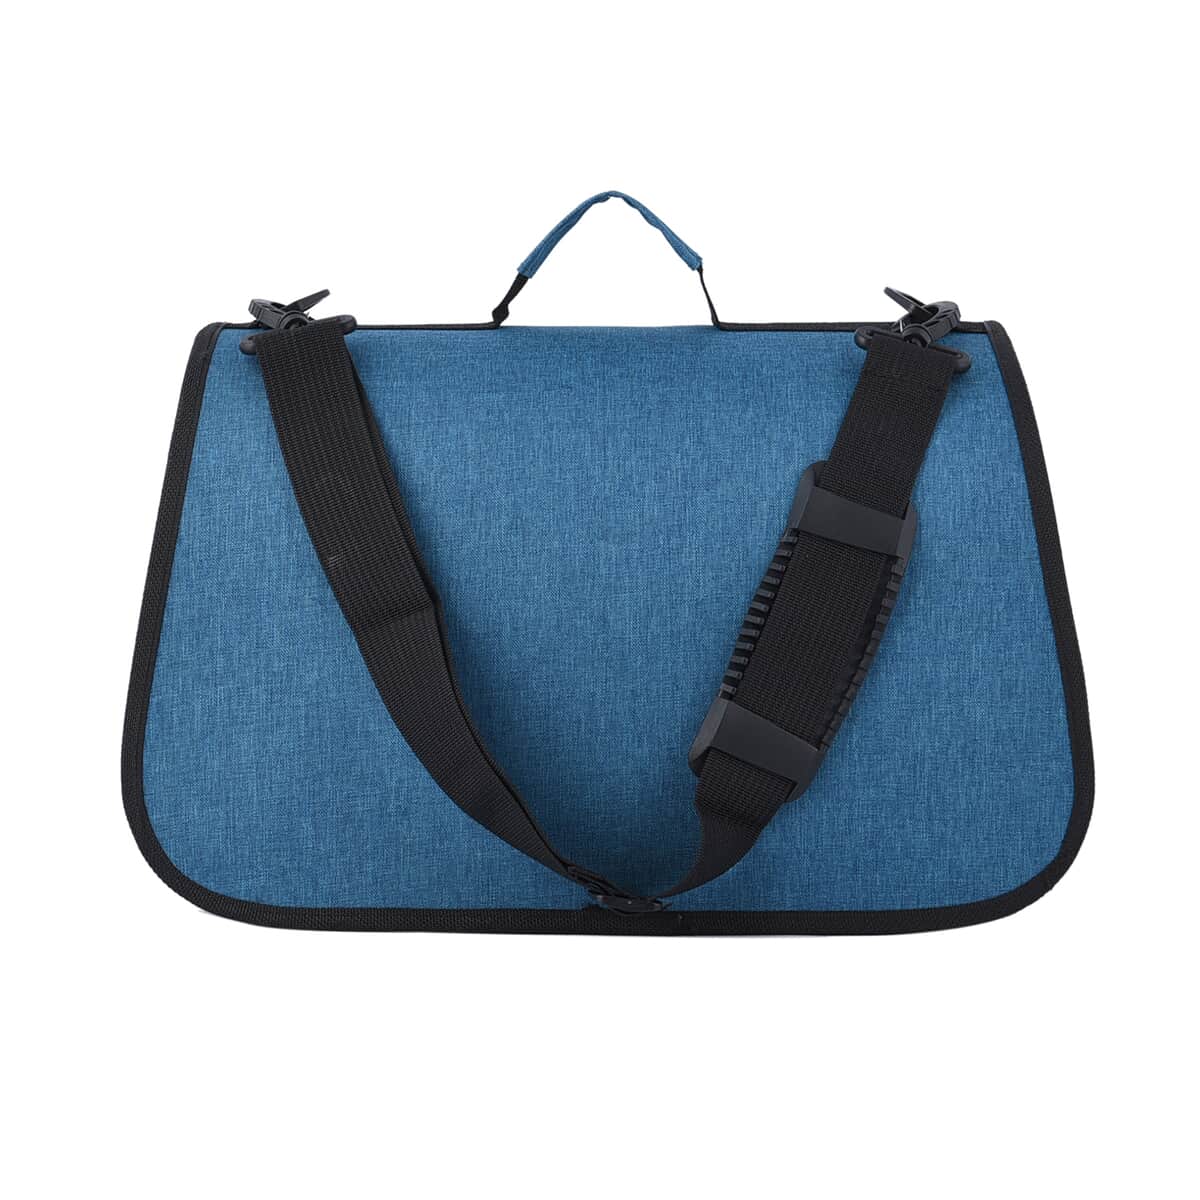 Blue Oxford Fabfric Pet Bag (15.75"x10.24"x11.81") with Adjustable Shoulder Strap image number 6